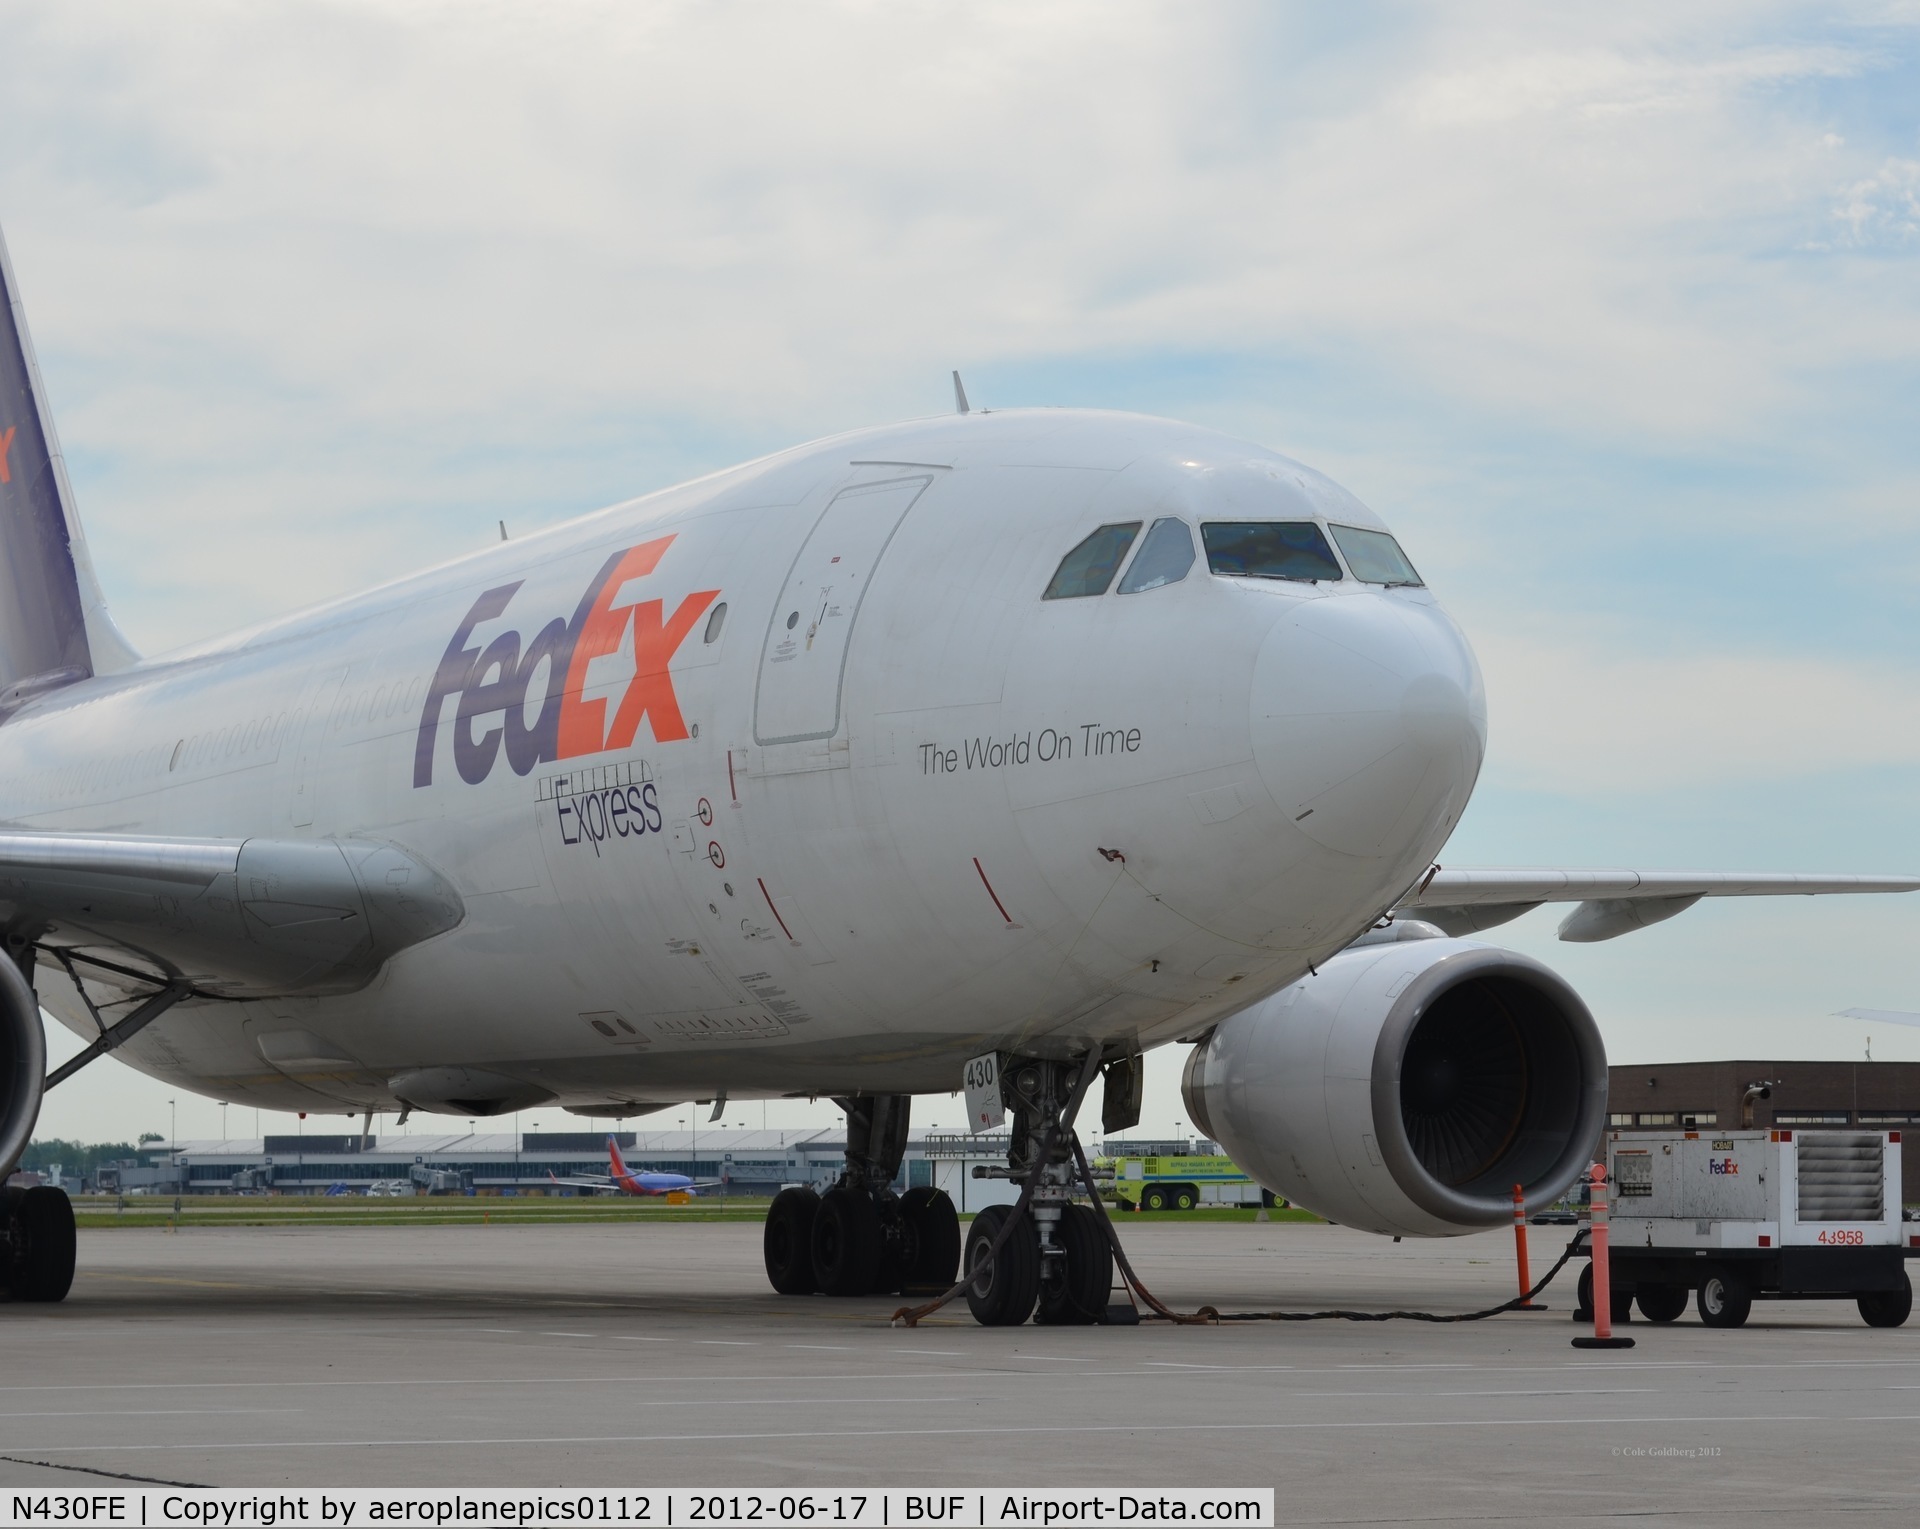 N430FE, 1985 Airbus A310-203 C/N 394, N430FE of Fedex Express at BUF. See more photos at OPShots.net